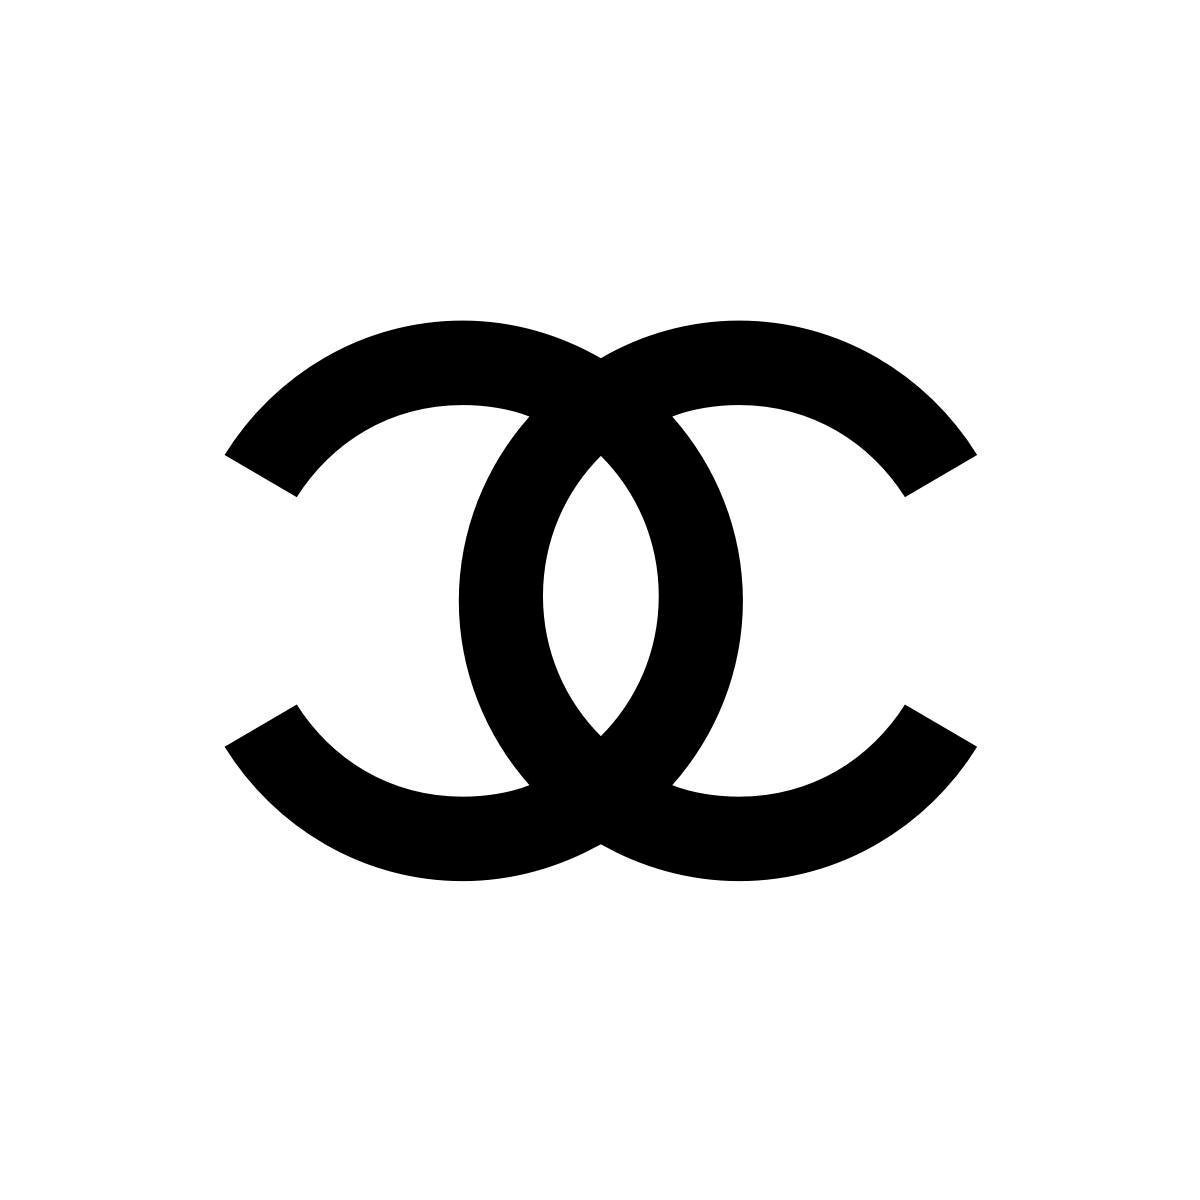 CHANEL BEAUTY BOUTIQUE DÜSSELDORF in Düsseldorf - Logo